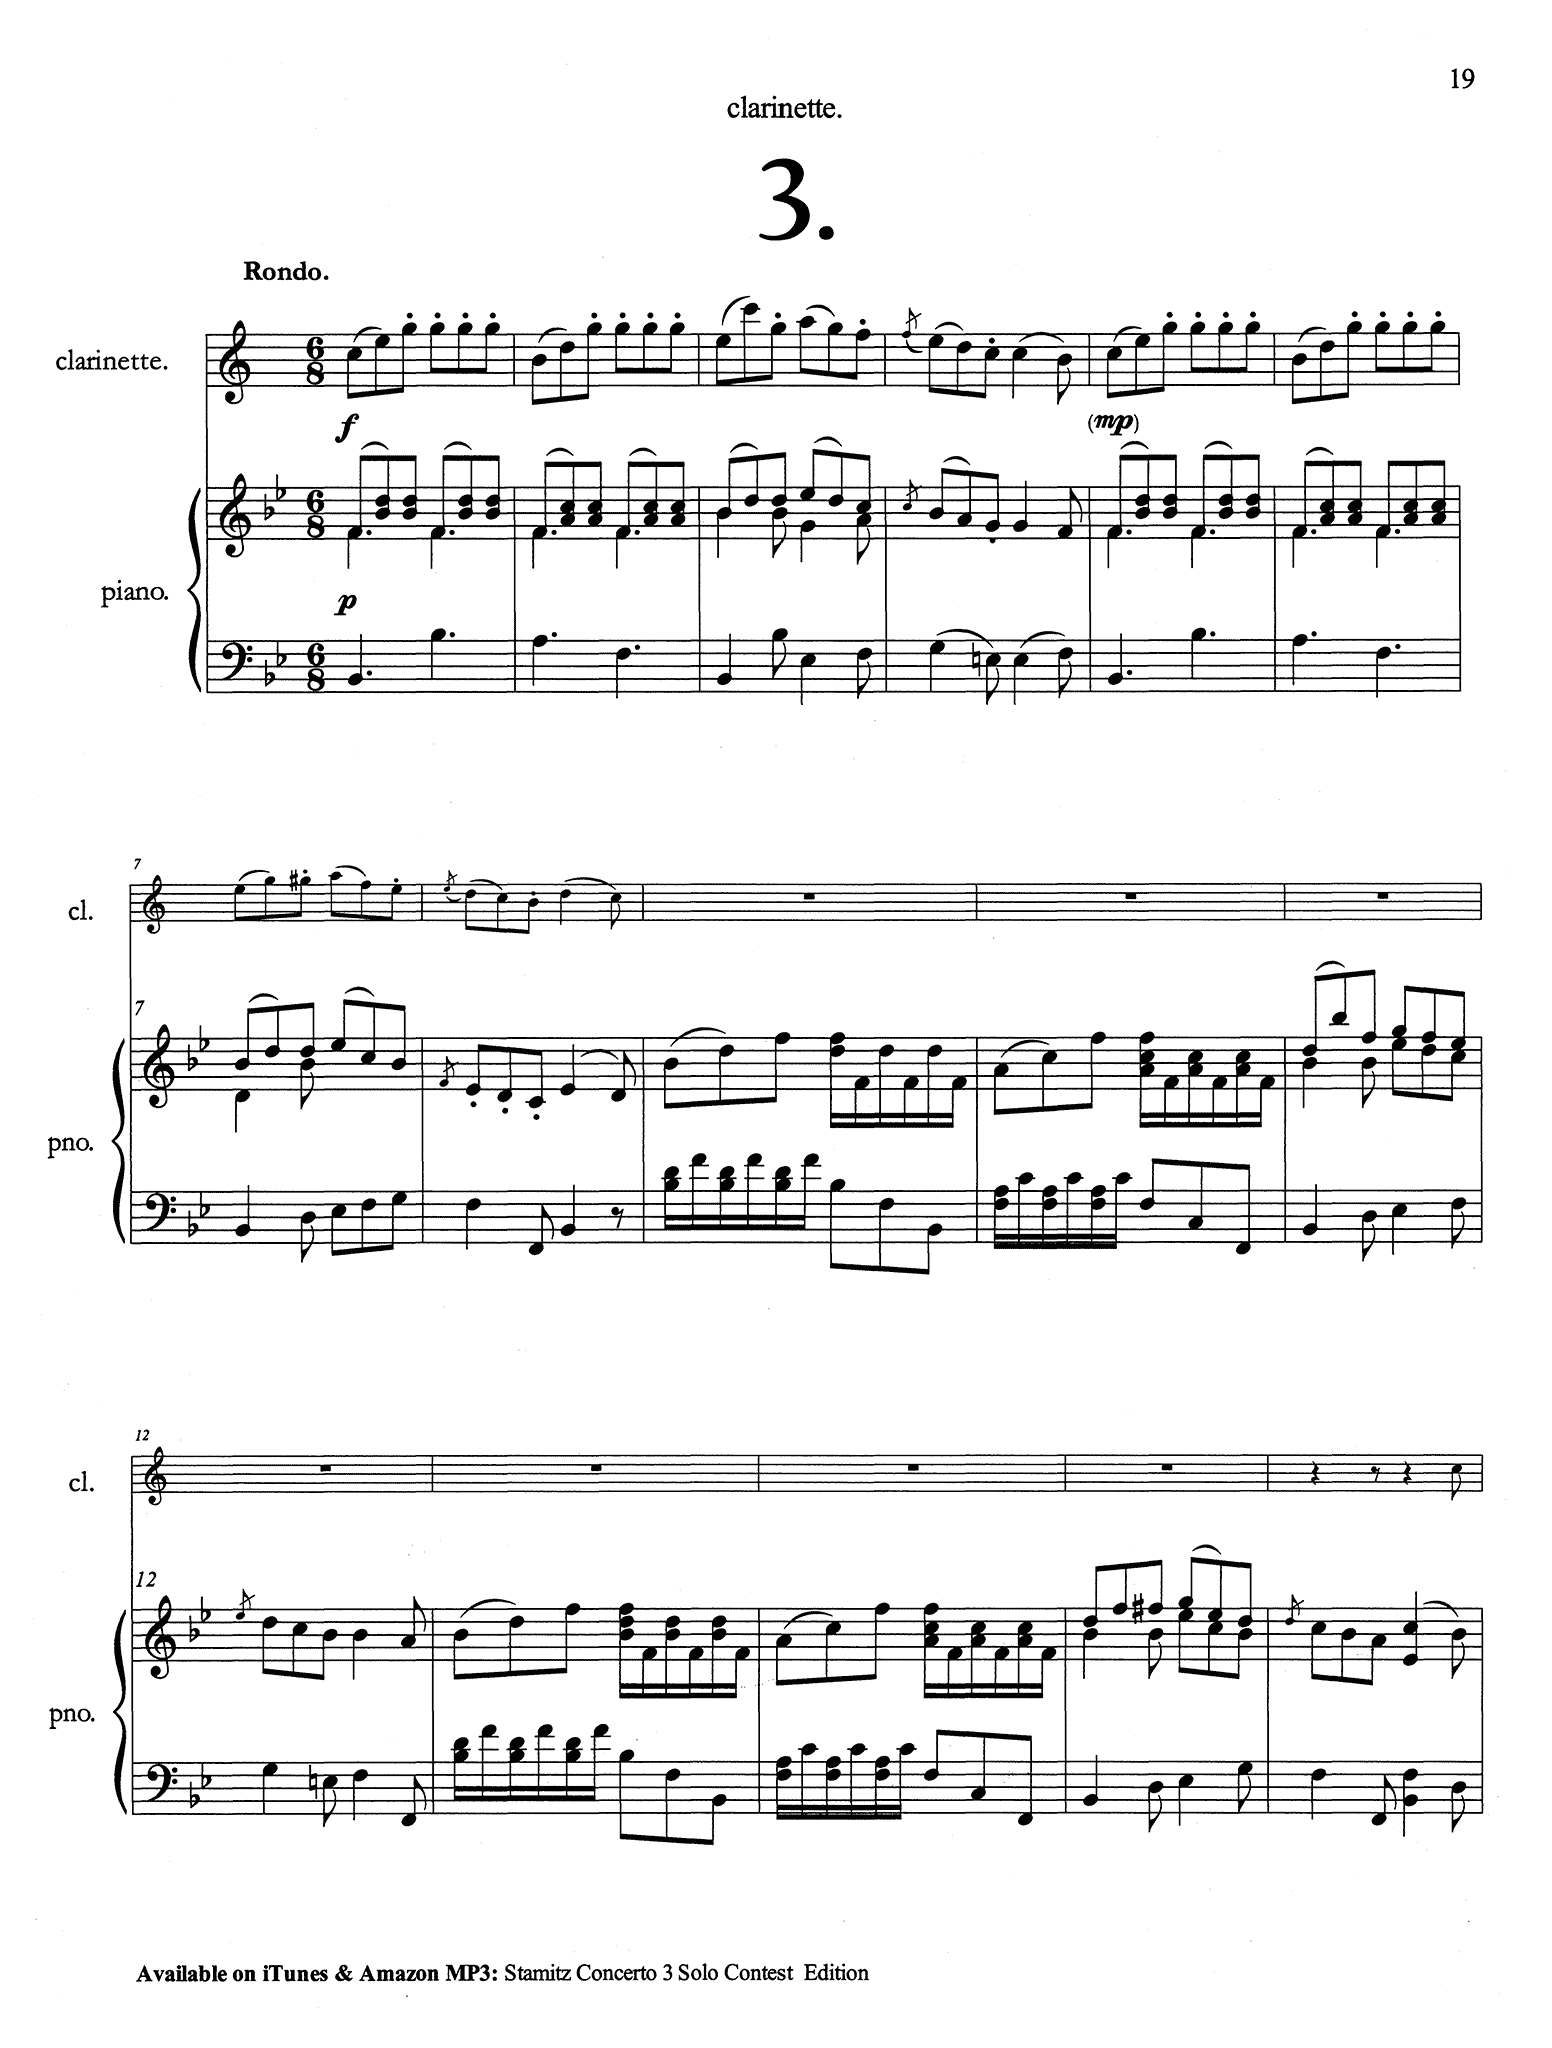 Stamitz Clarinet Concerto No. 3 Solo Contest Edition - Movement 3